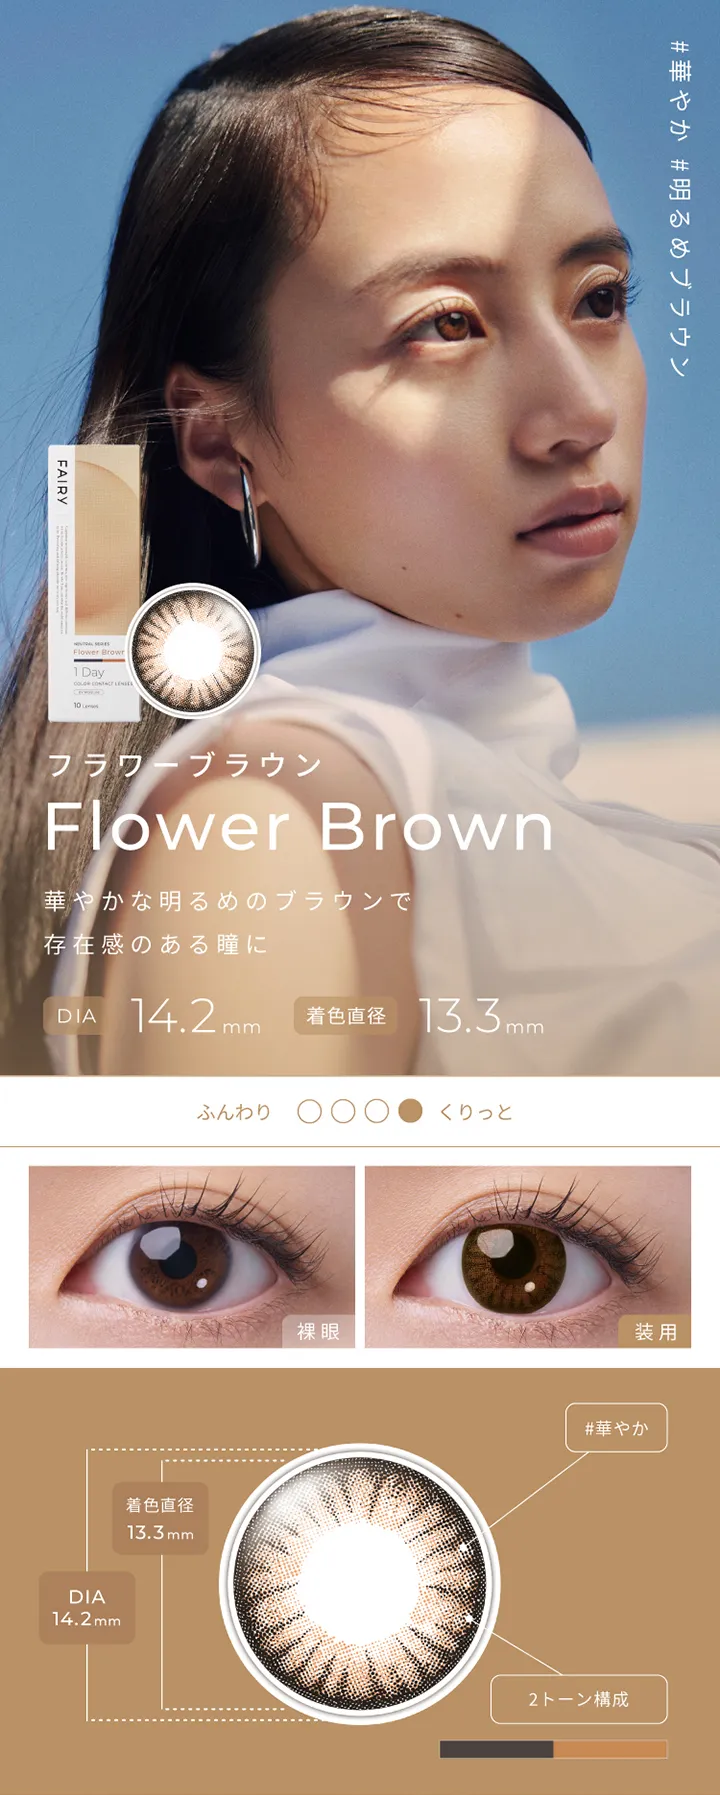 フェアリーワンデーニュートラルシリーズ - フラワーブラウン[Flower Brown]